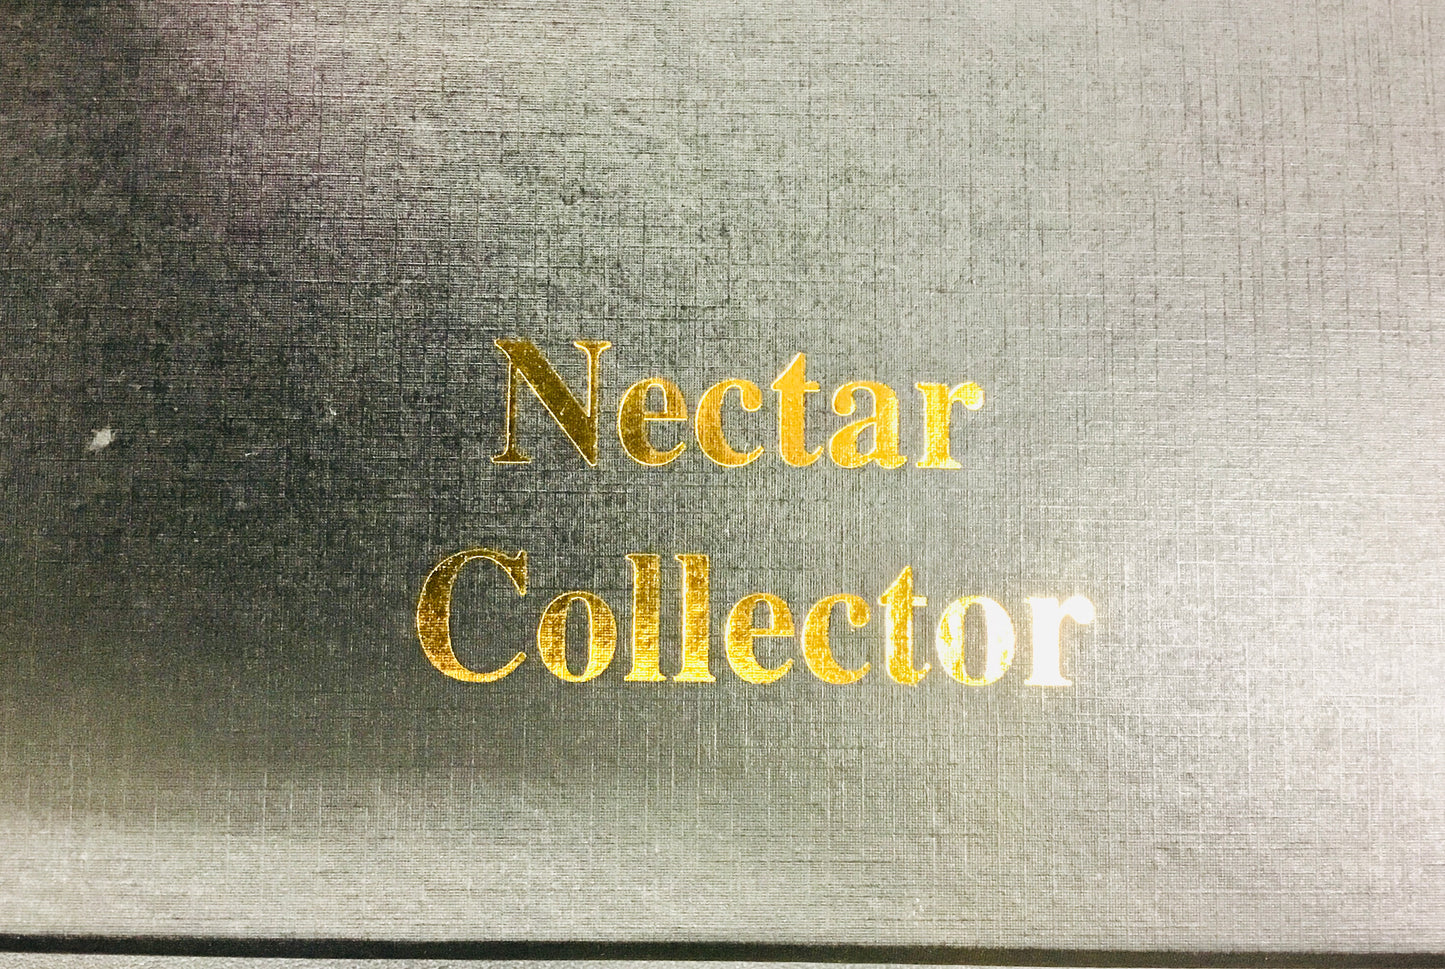 Nectar Collector Collection